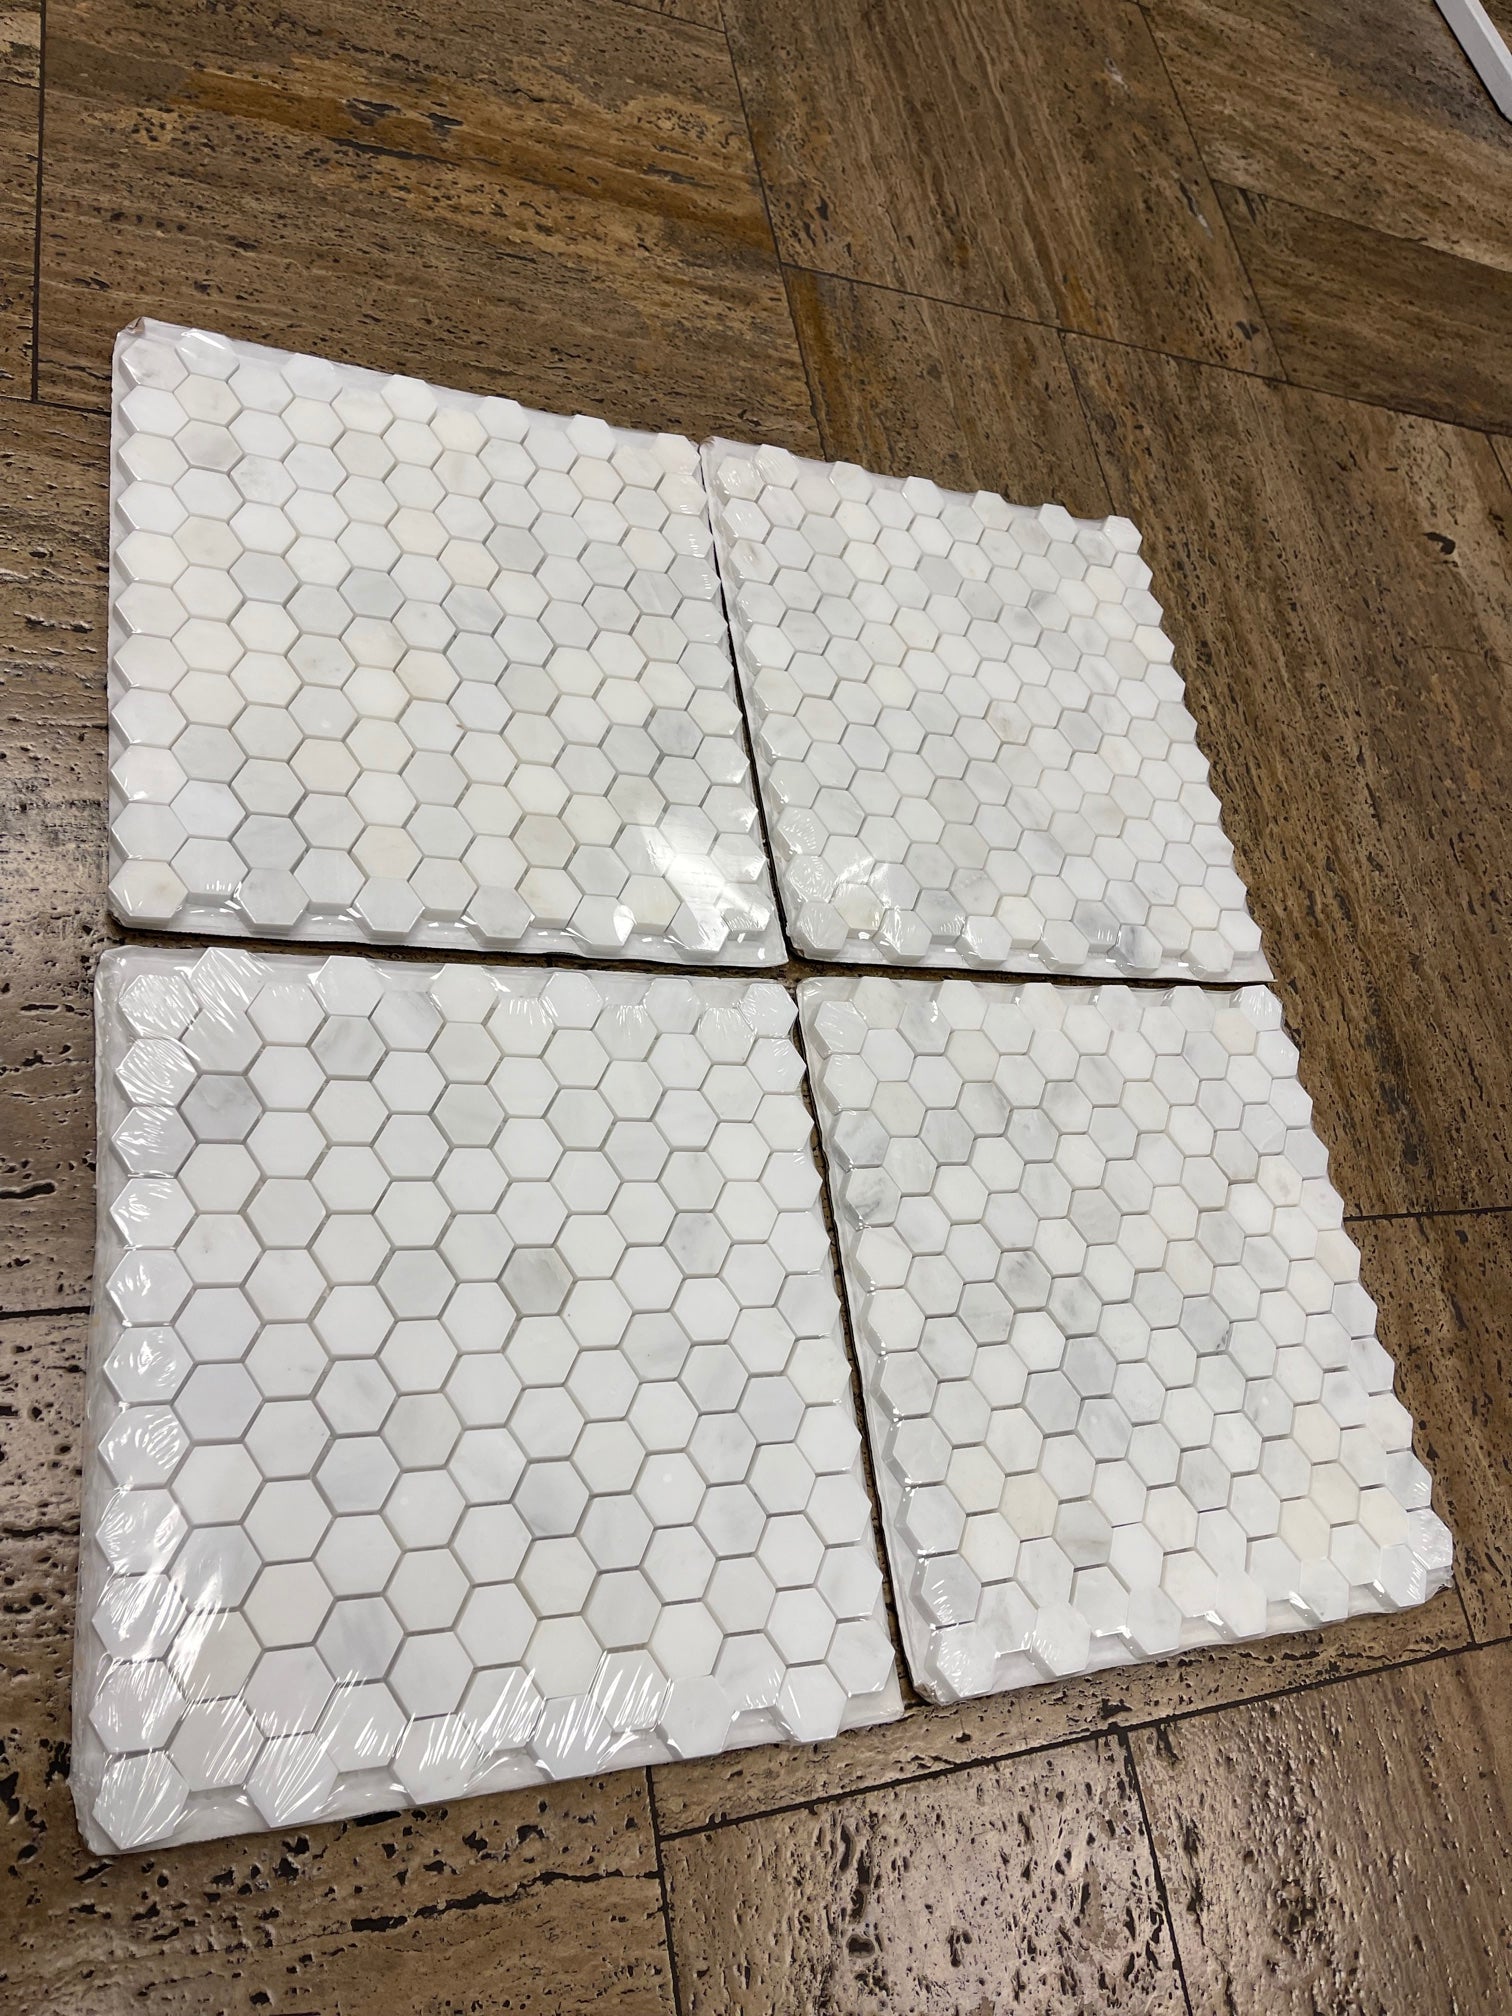 Oriental White Hexagon Mosaic Tile 1x1"